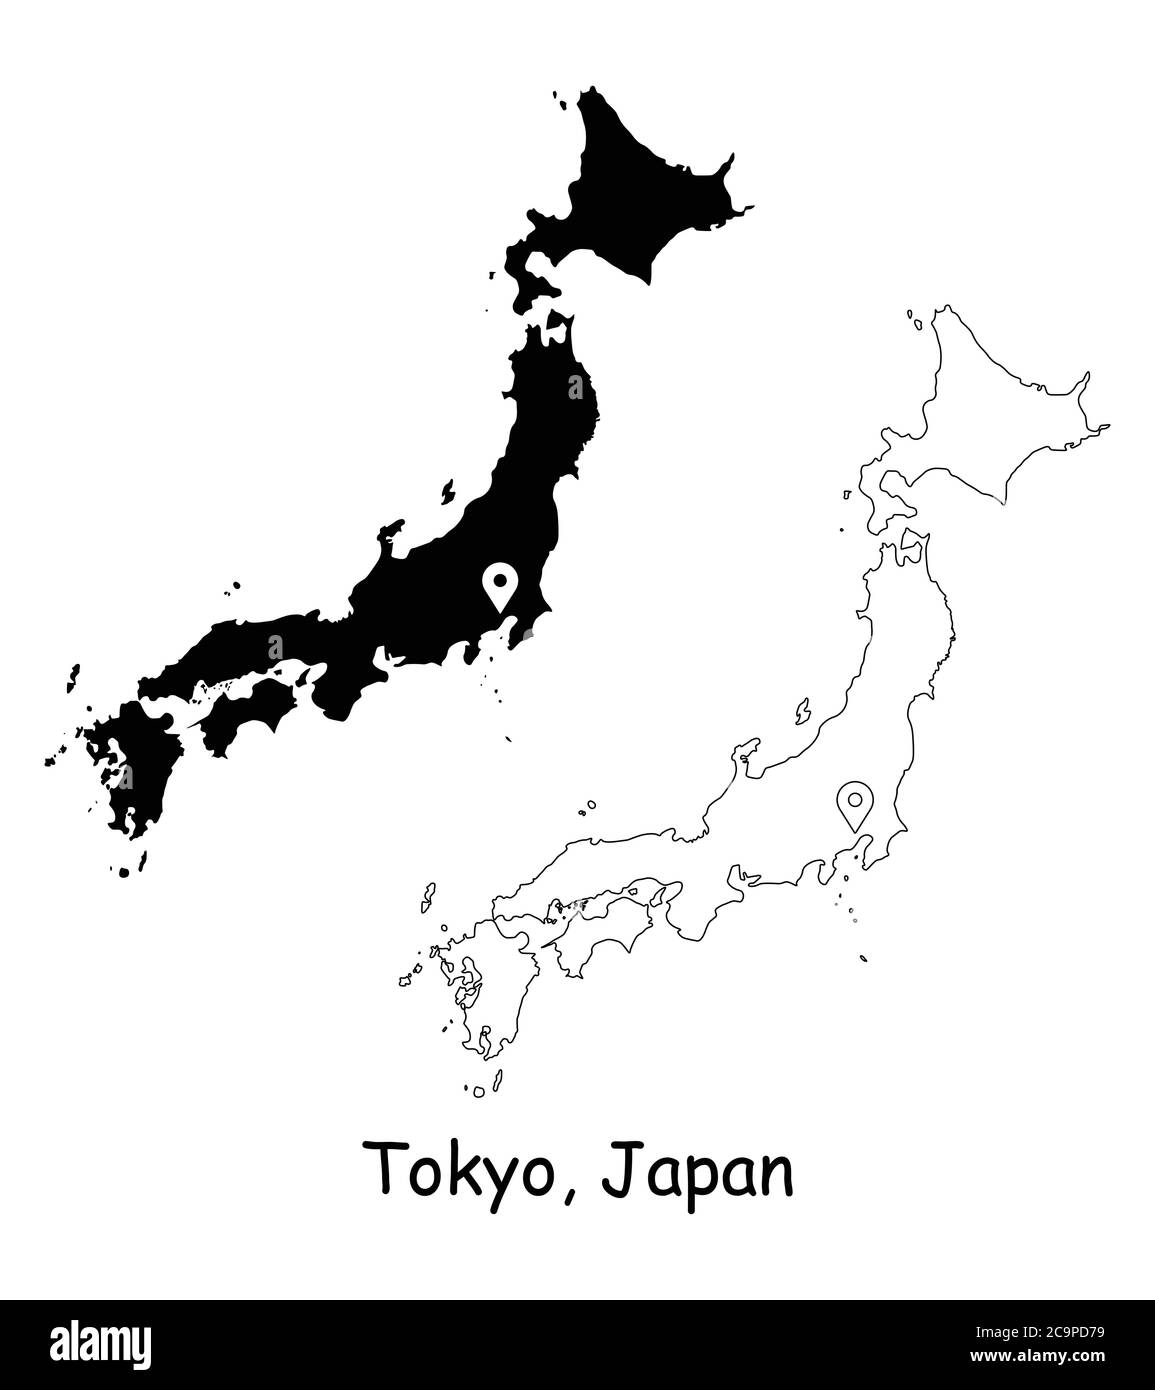 Tokyo Japon. Carte détaillée du pays avec broche d'emplacement sur Capital City. Cartes silhouettes et vectorielles noires isolées sur fond blanc. Vecteur EPS Illustration de Vecteur